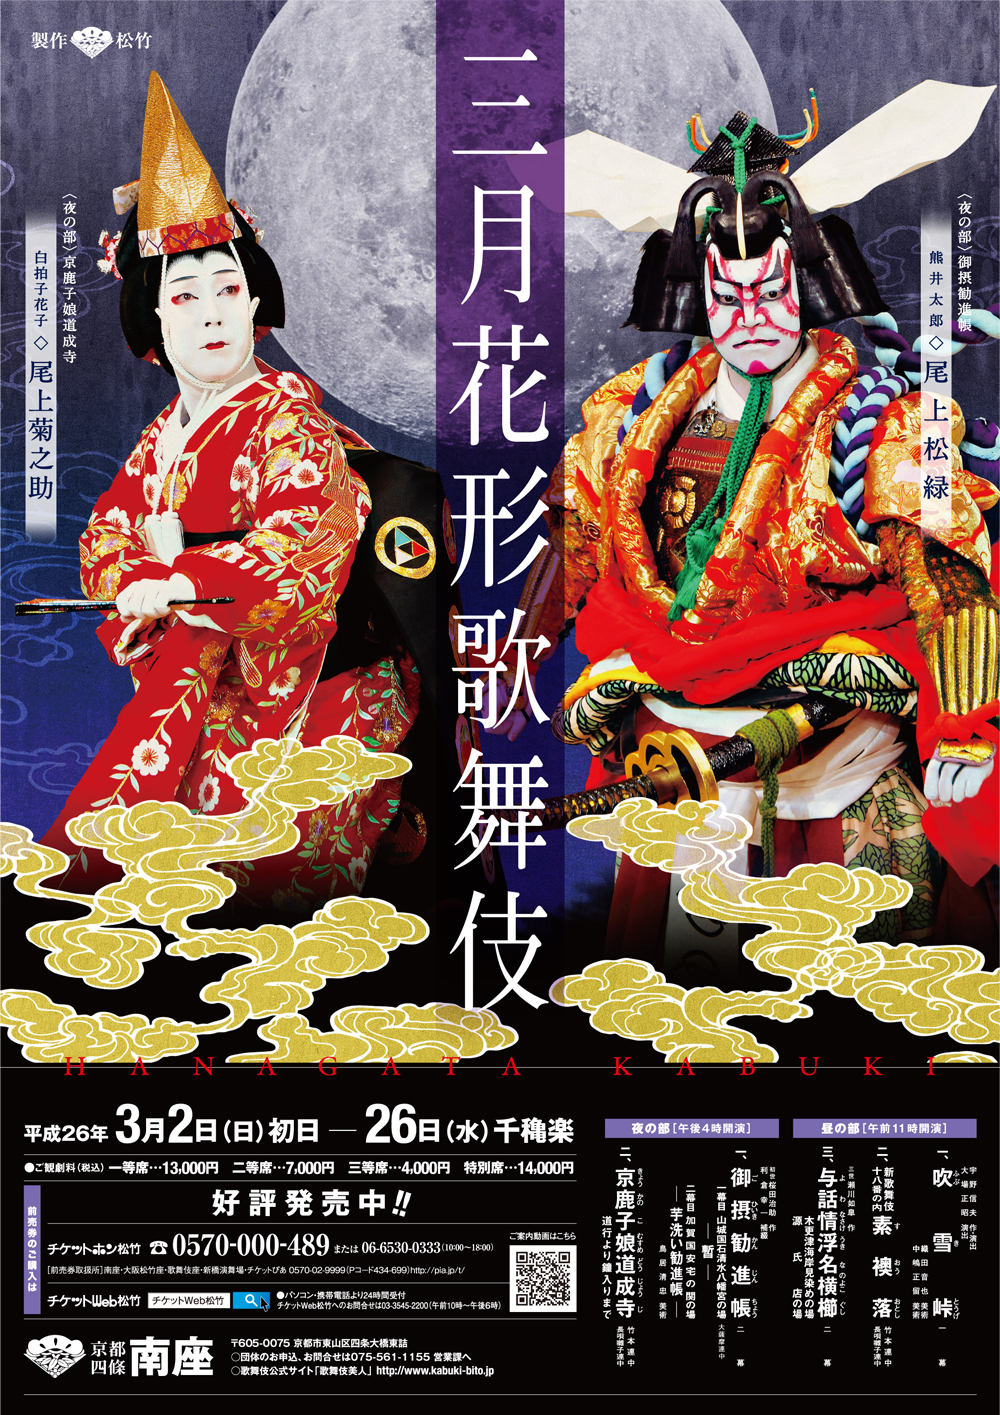 南座「三月花形歌舞伎」動画と特別ポスター公開